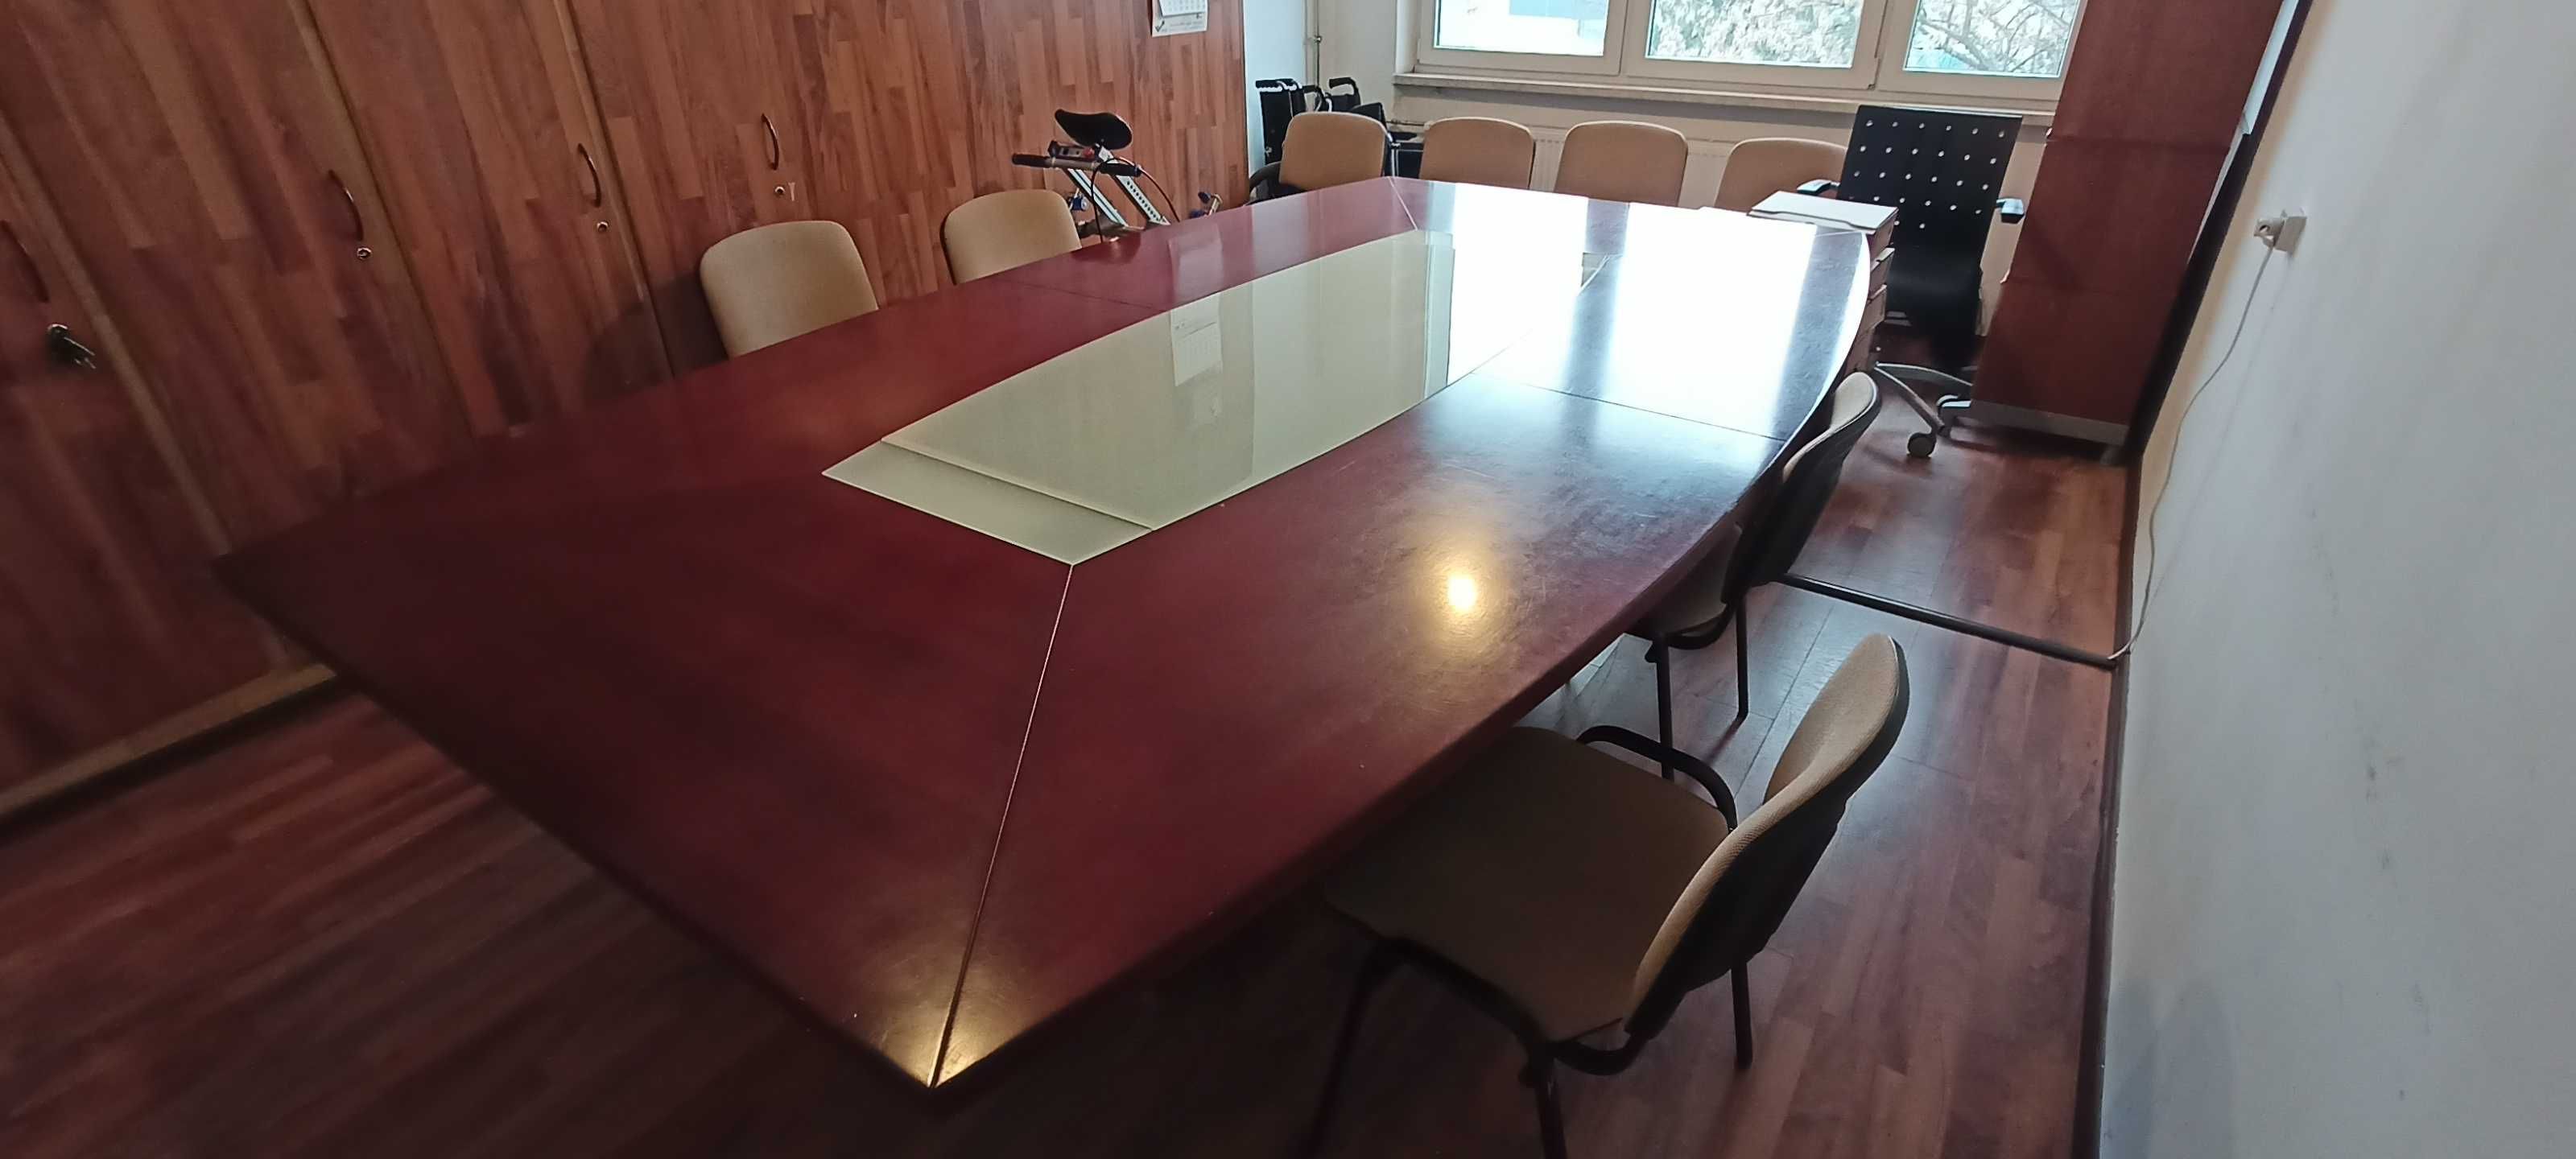 Stół konferencyjny, drewniany. Tychy